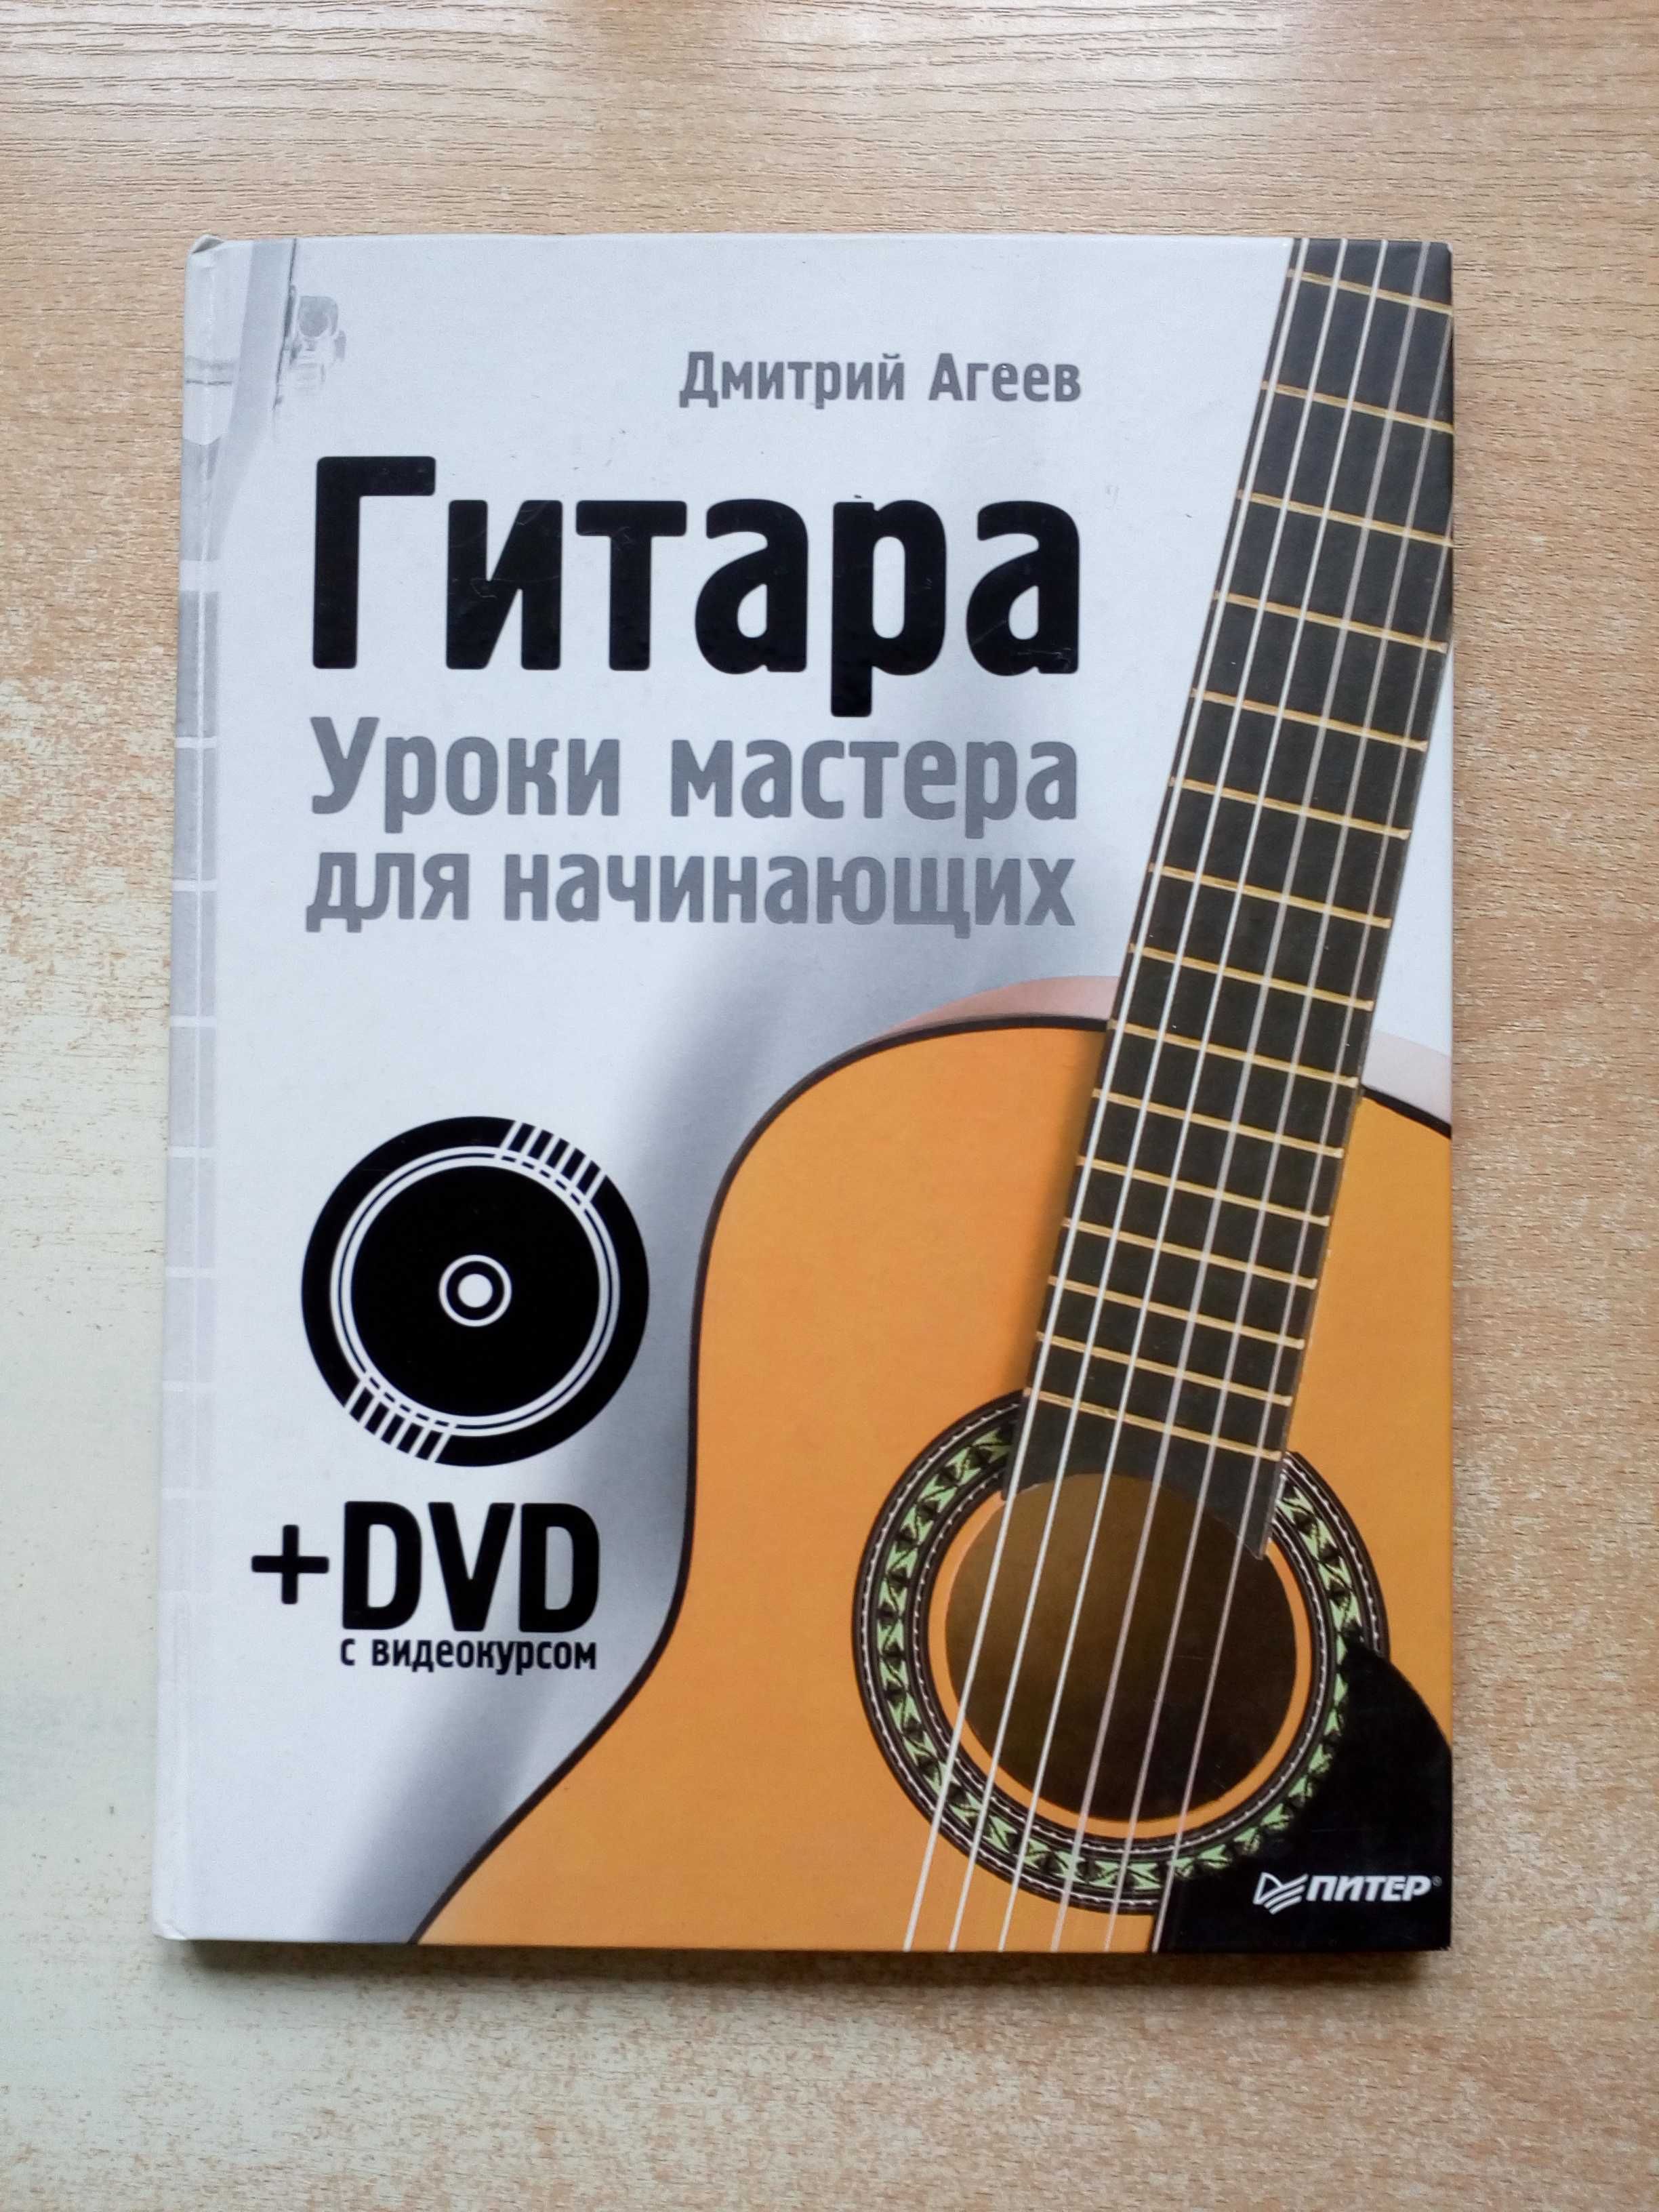 Агеев"Гитара.Уроки мастерства для начинающих"(Без DVD).